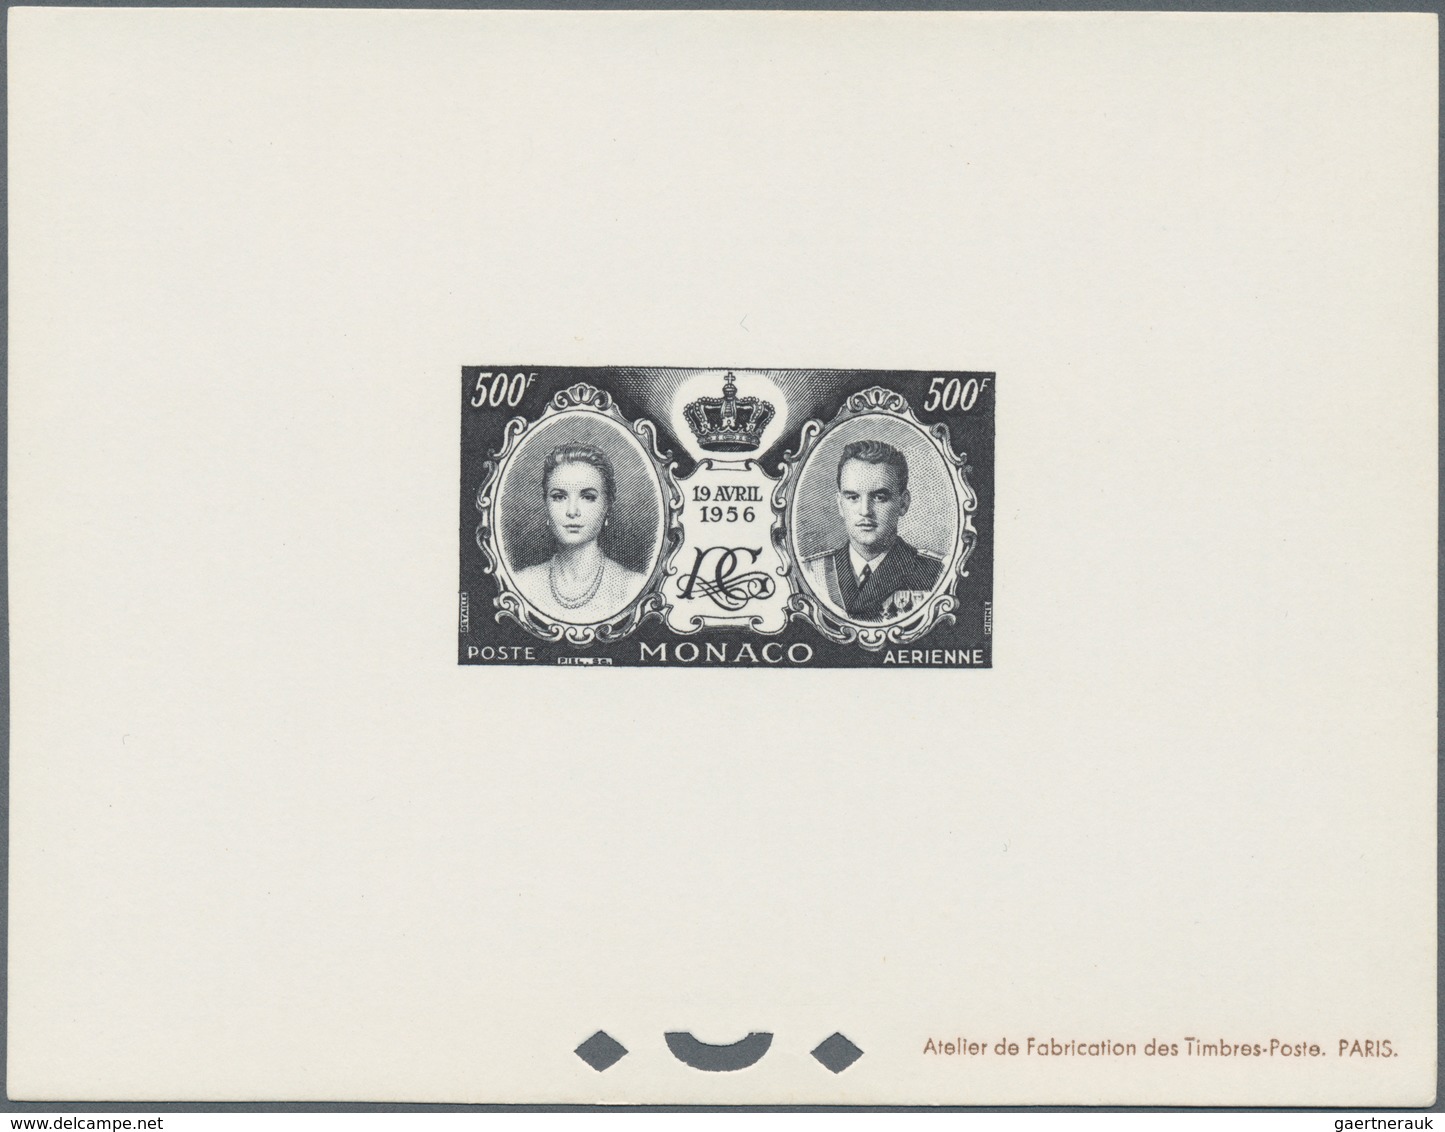 Monaco: 1956, Royal Wedding, Airmail 500fr. As Epreuve D'artiste In Black, Lot Of Ten Pieces. Maury - Oblitérés